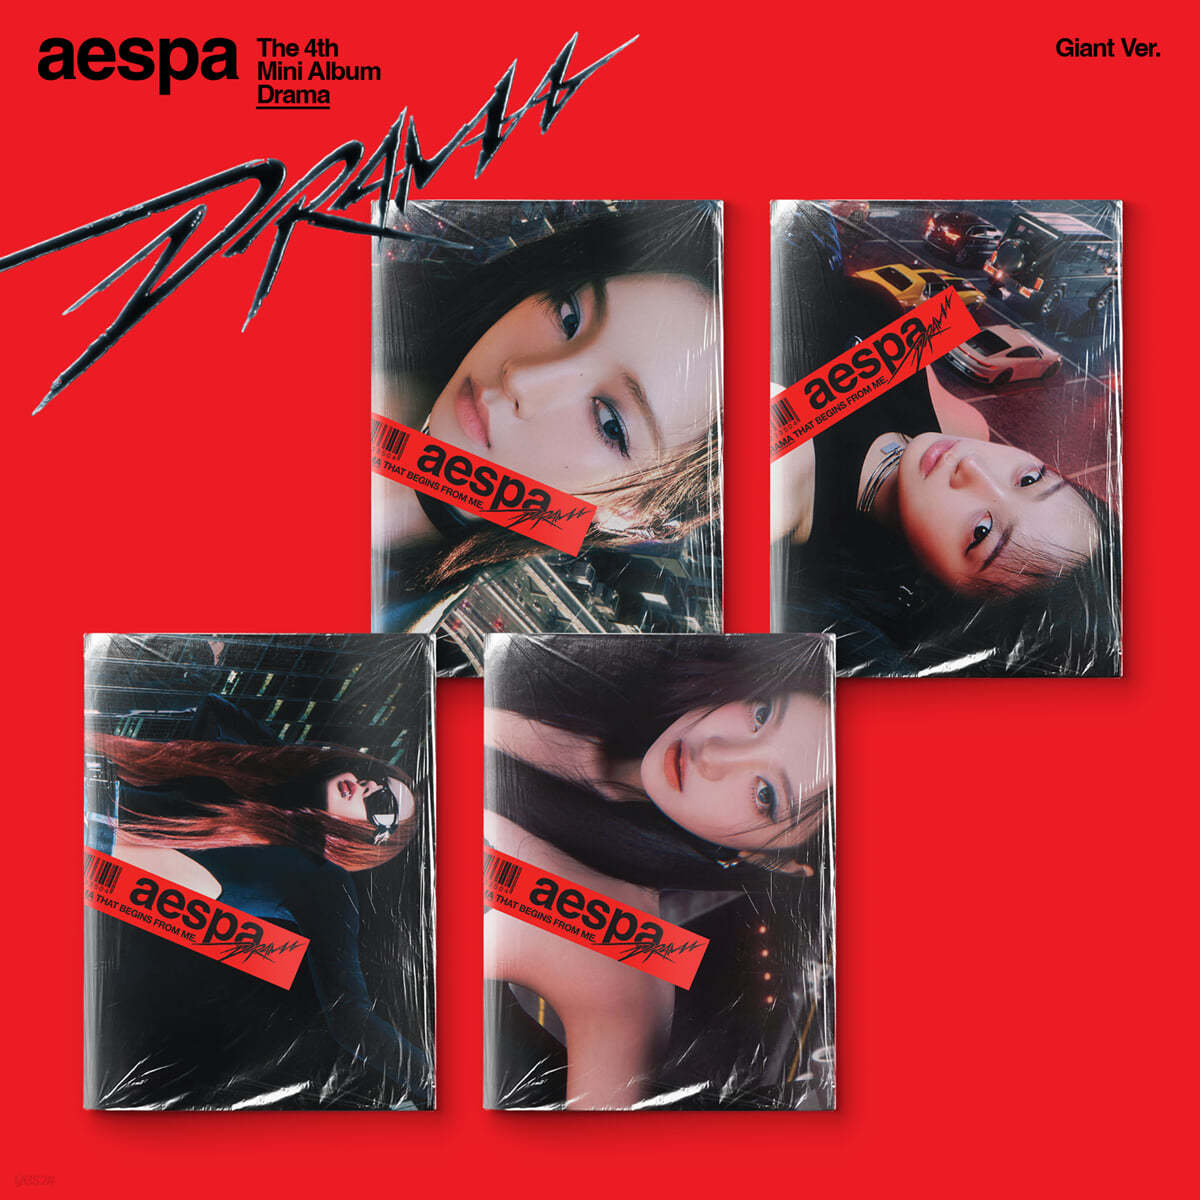 에스파 (aespa) - 미니앨범 4집 : Drama [Giant ver.][버전 4종 중 1종 랜덤 발송]